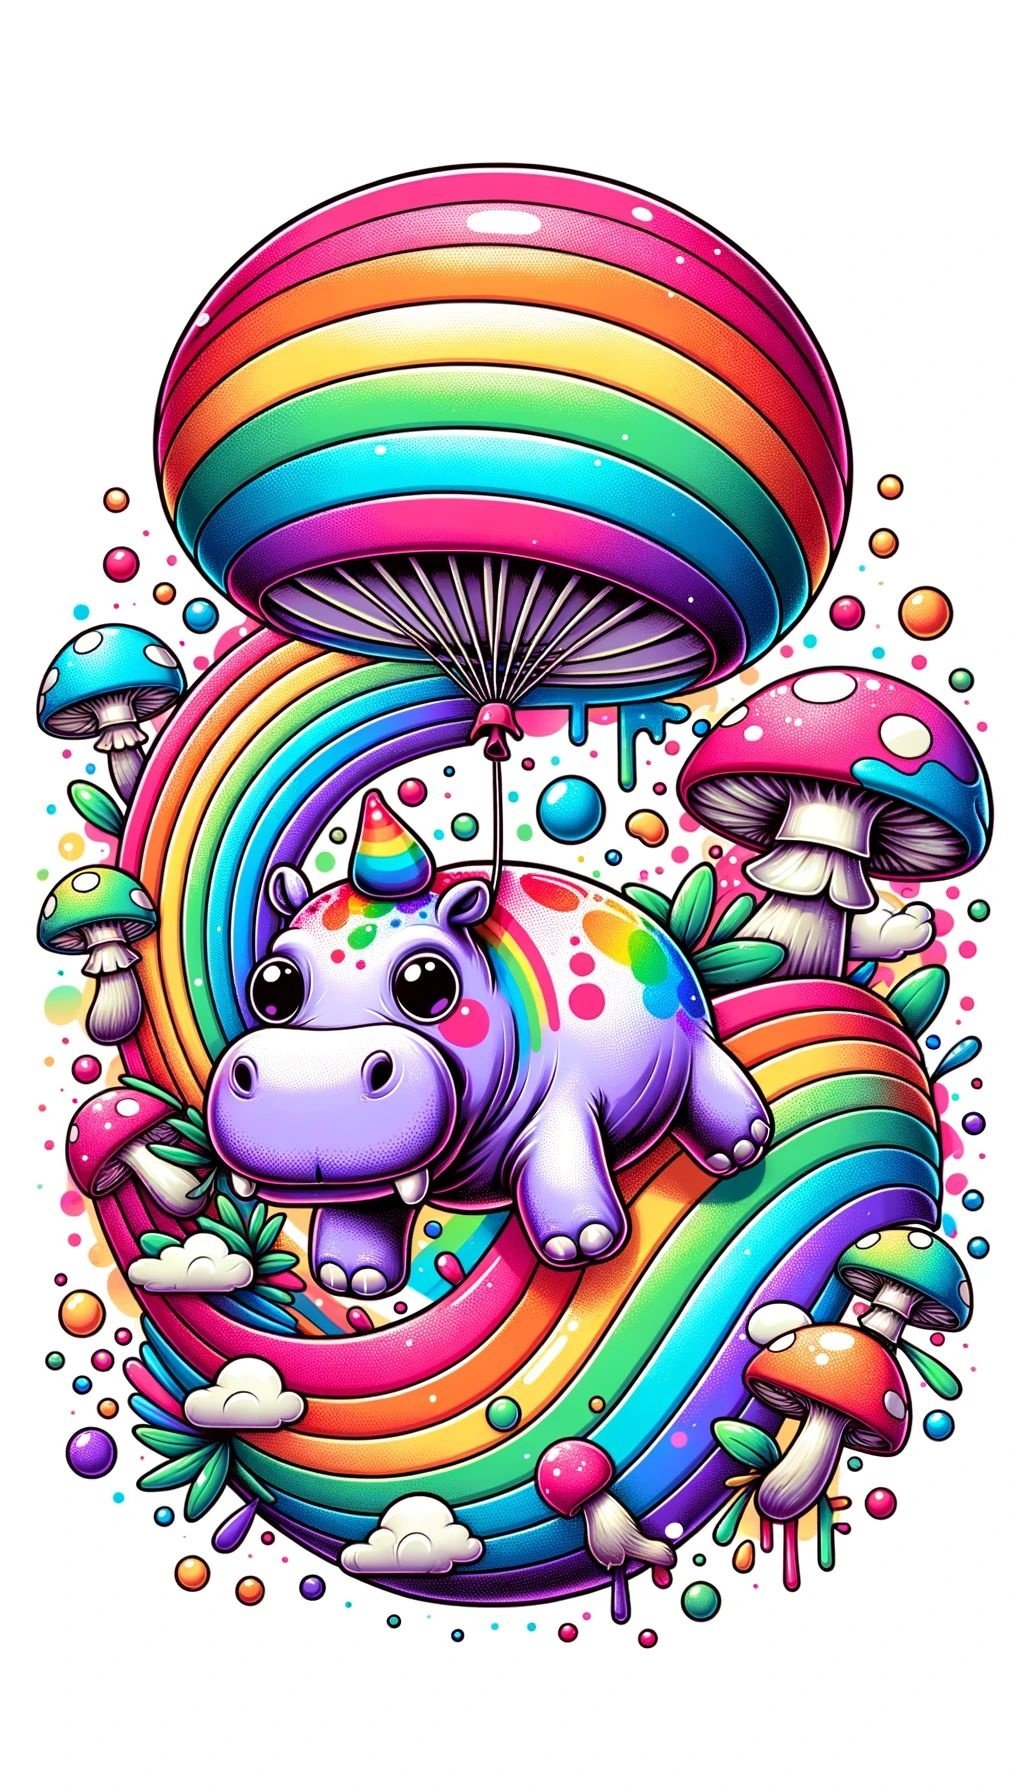 Prompt: rainbow hippo flying a balloon, pop surreal, splash art, cartoon mis - en - scene, mushroomcore